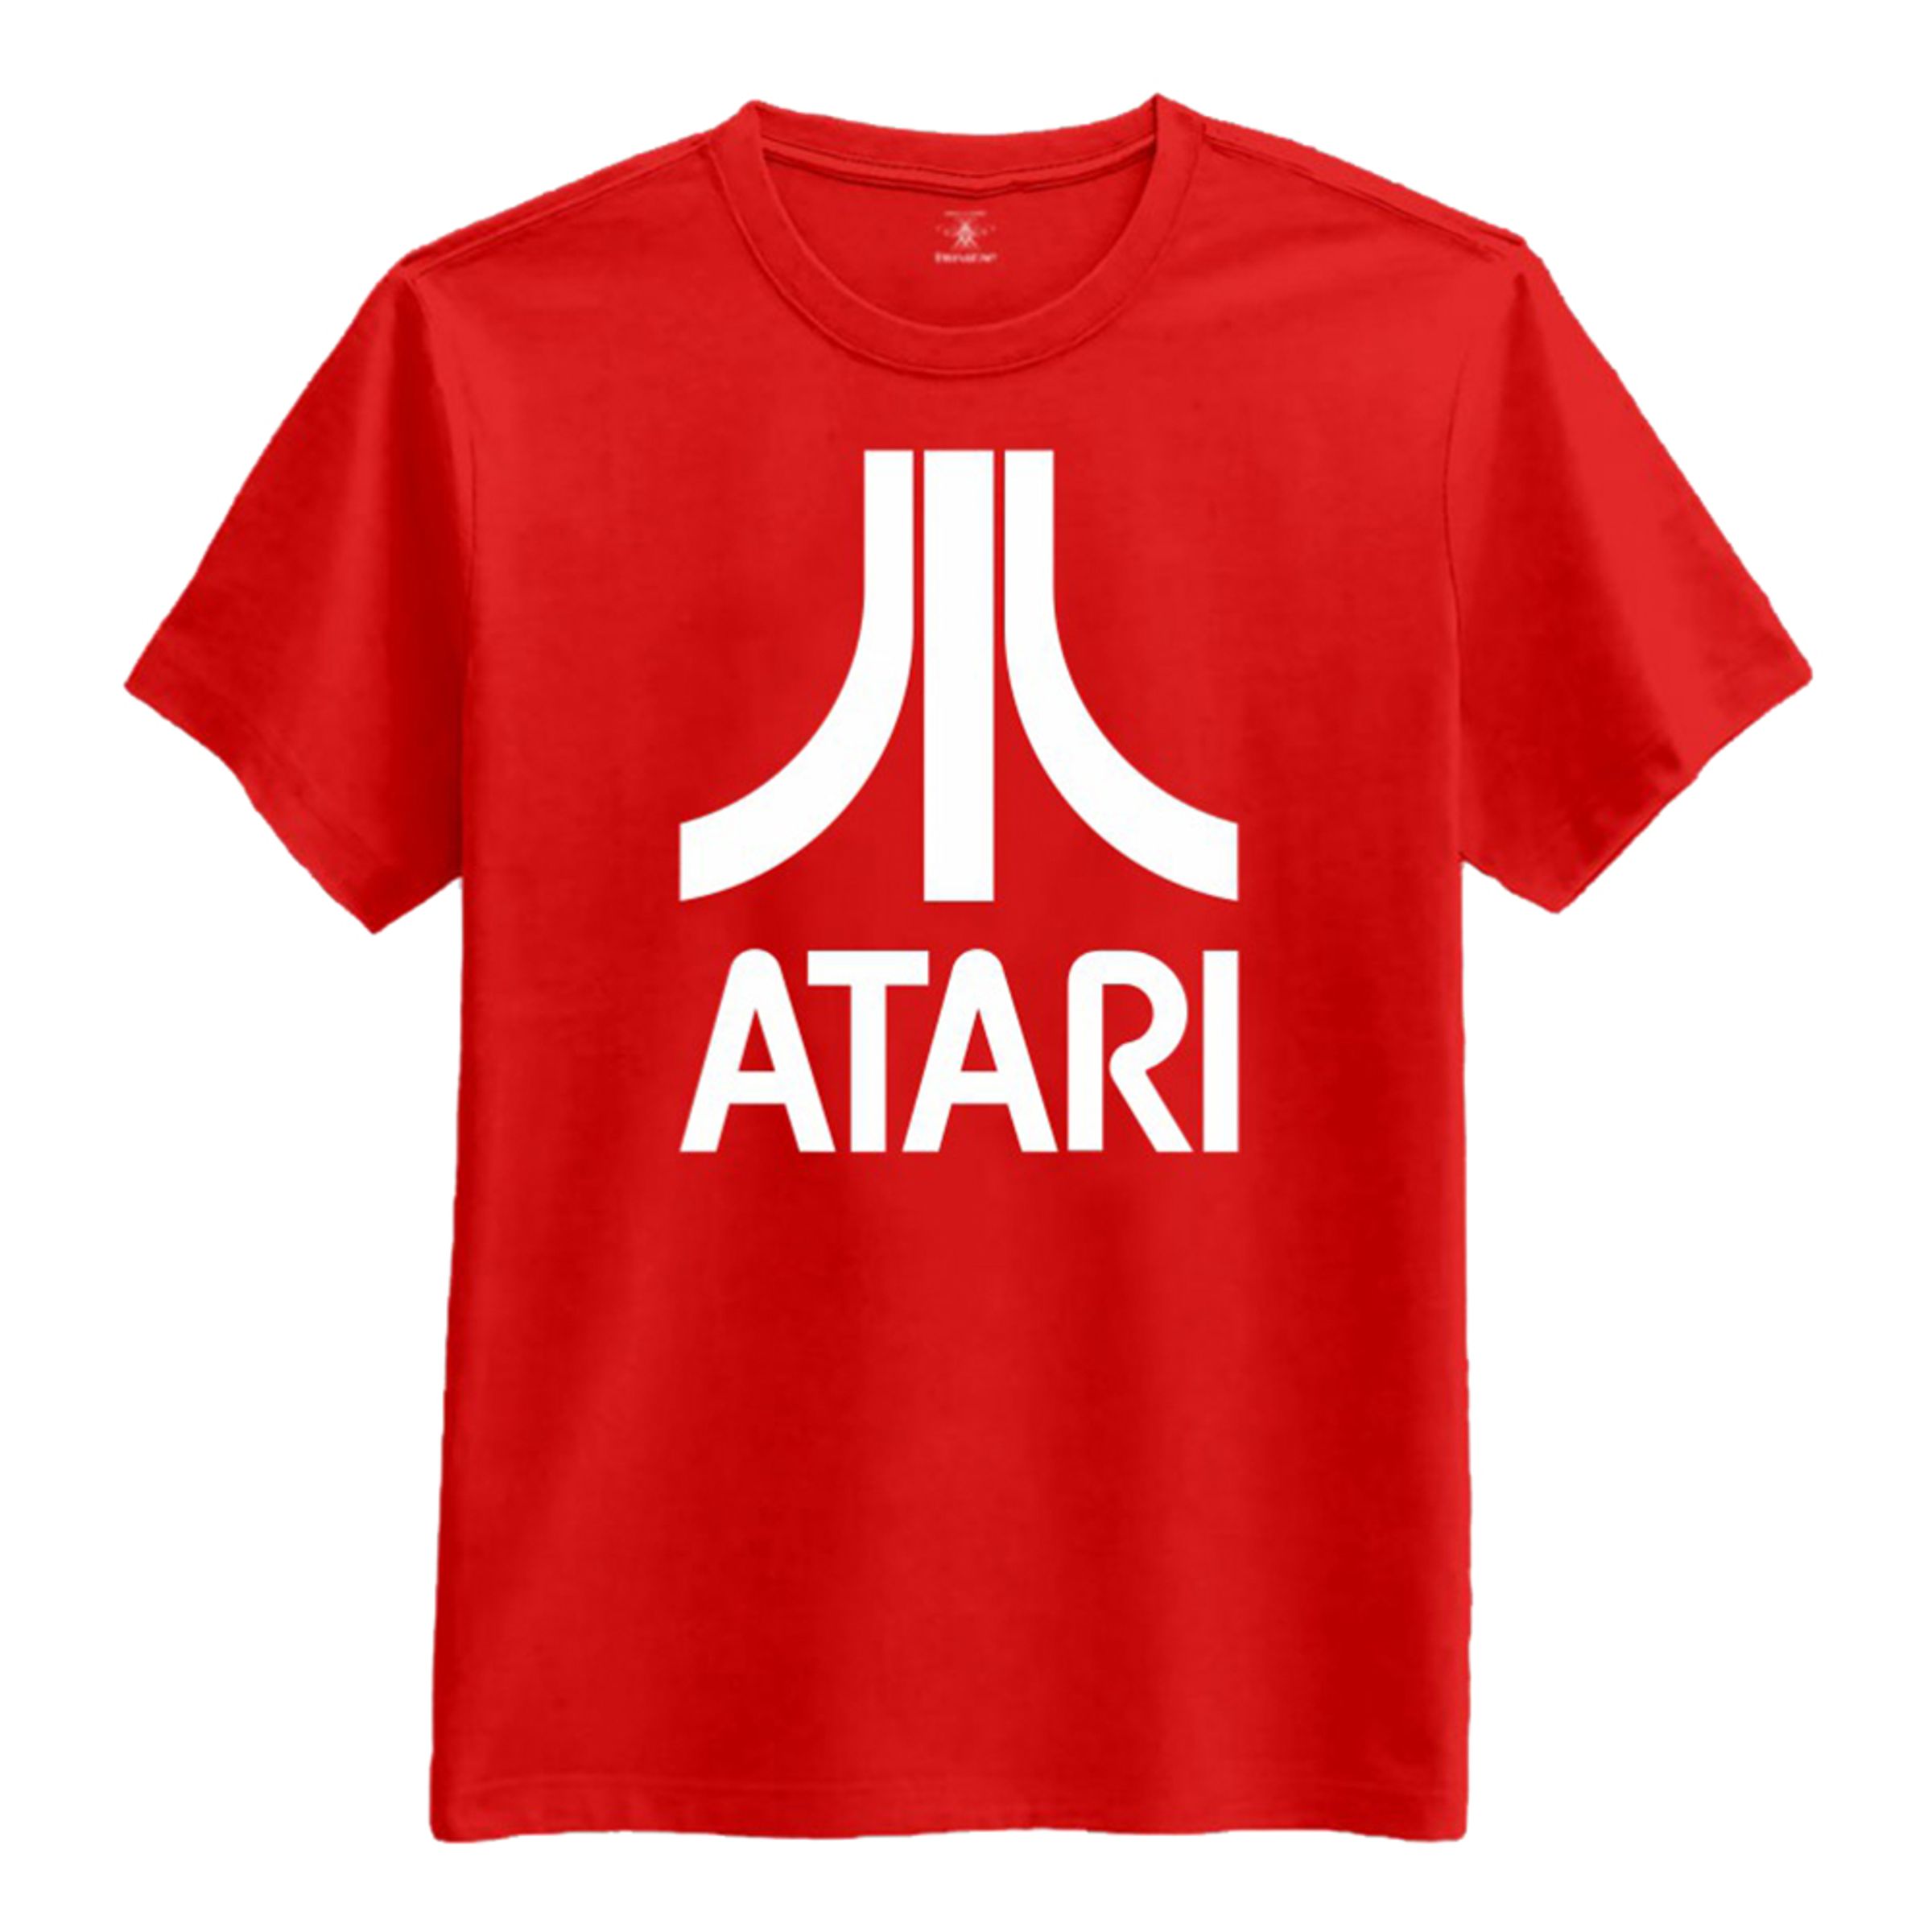 Atari T-shirt - XX-Large